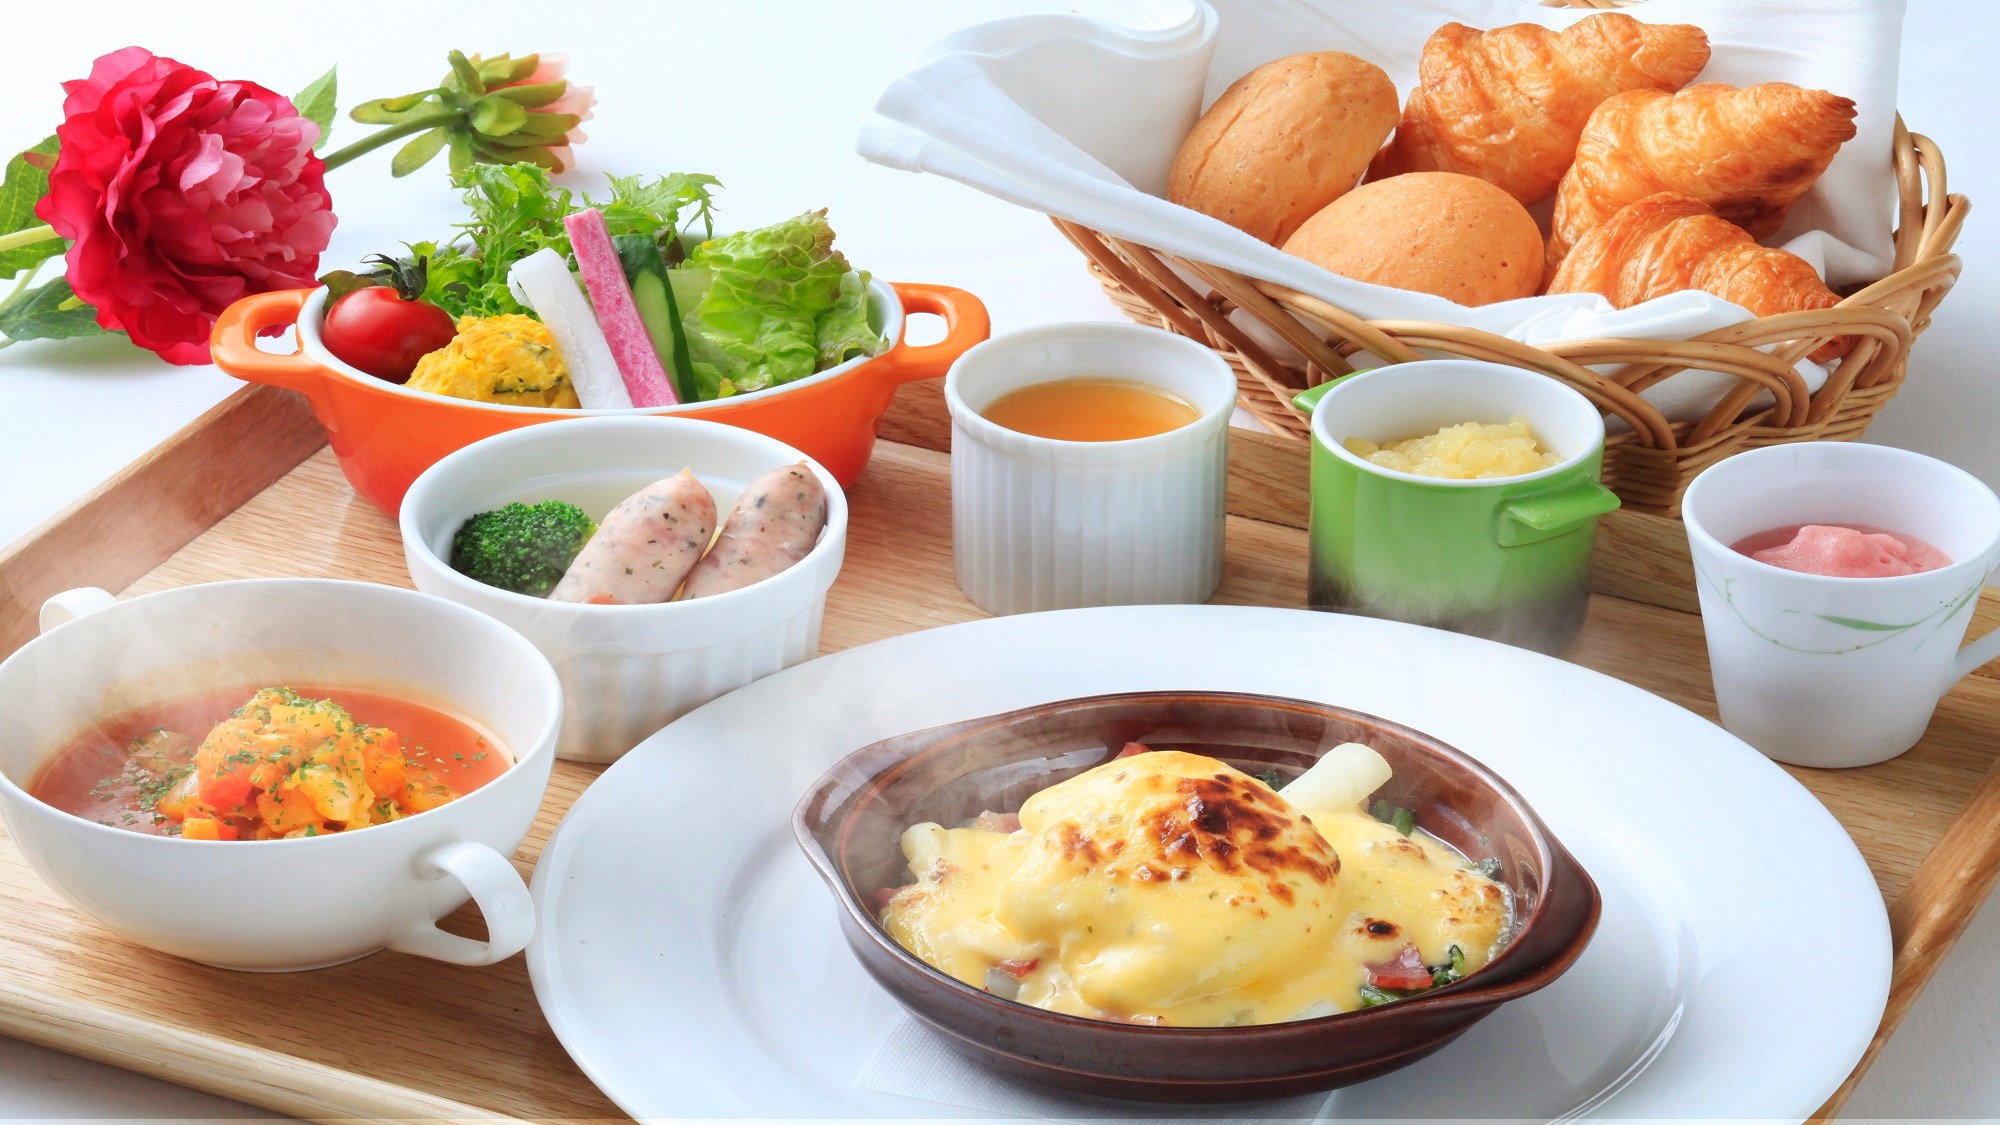 ■「조식」빵과 밥의 양쪽을 준비한 일본식 양식을 즐길 수 있습니다.